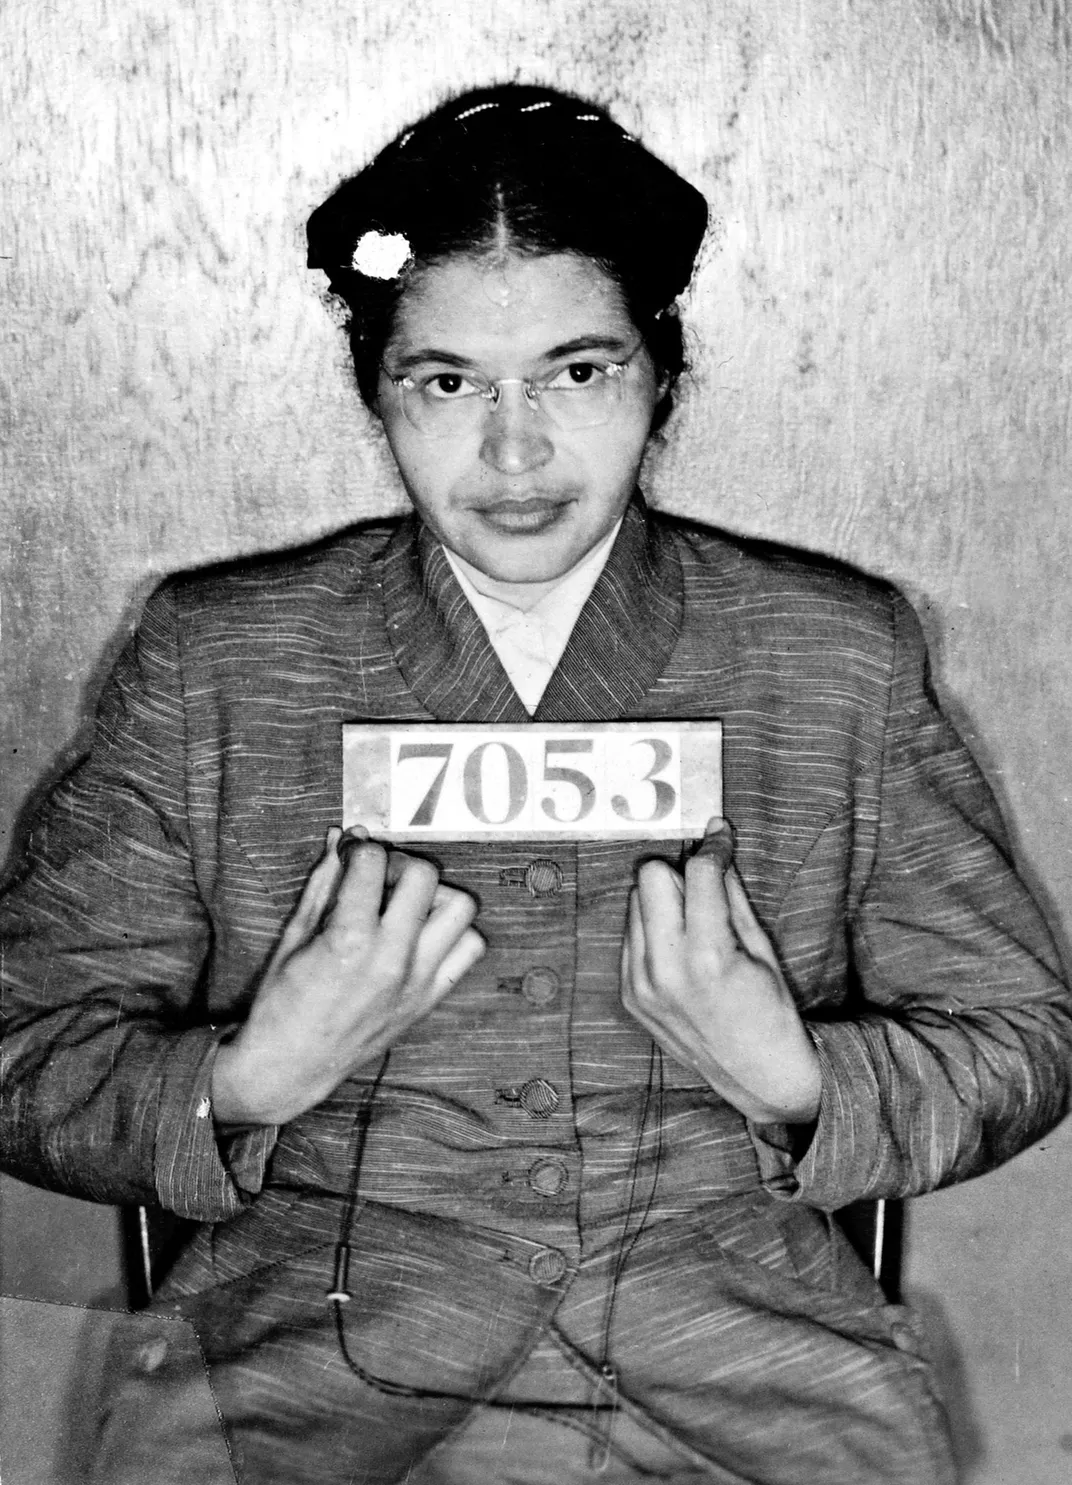 Rosa Parks mug shot